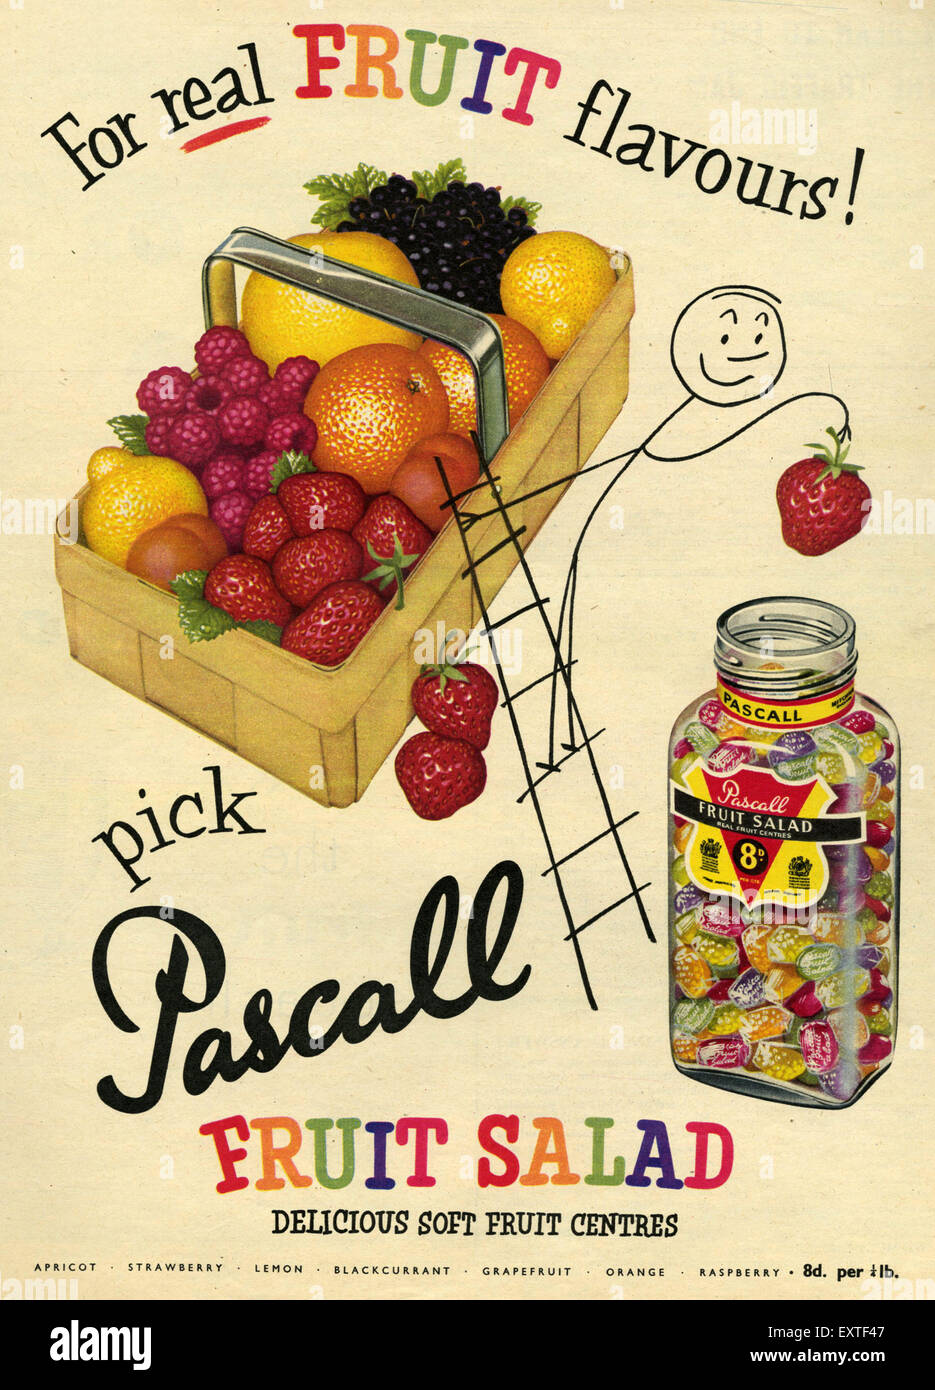 1950s UK Pascall Magazine Advert Stock Photo